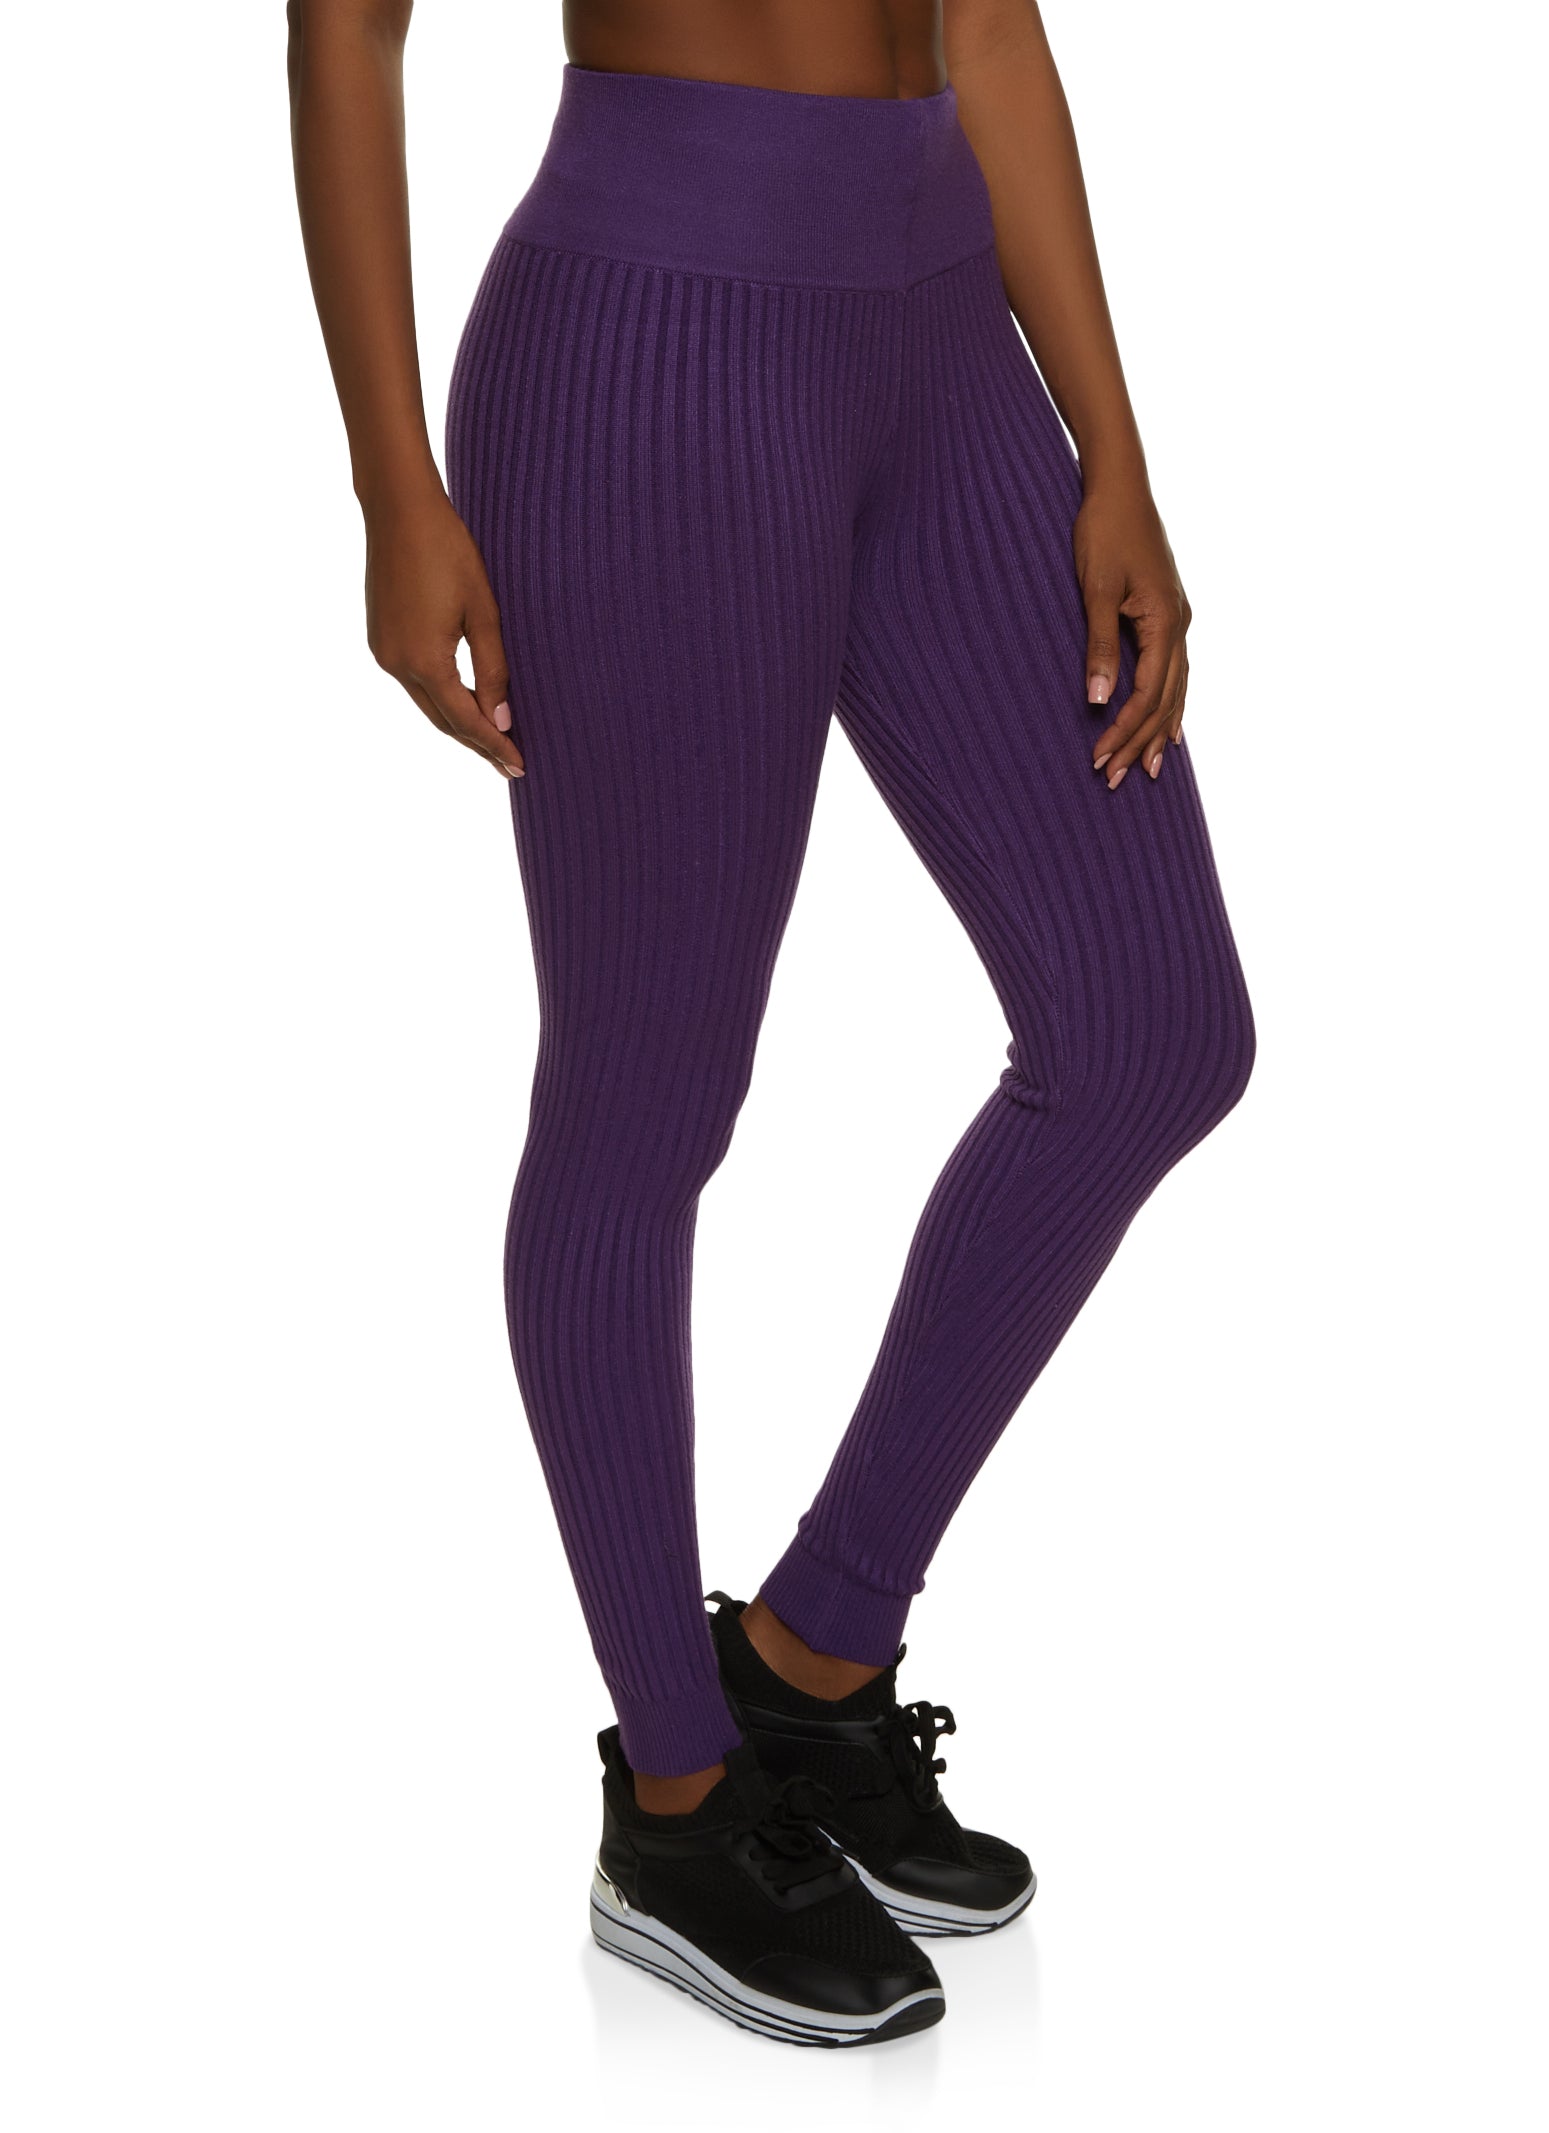 Purple Flyball Women's Activewear Leggings – Rainbows & Sprinkles